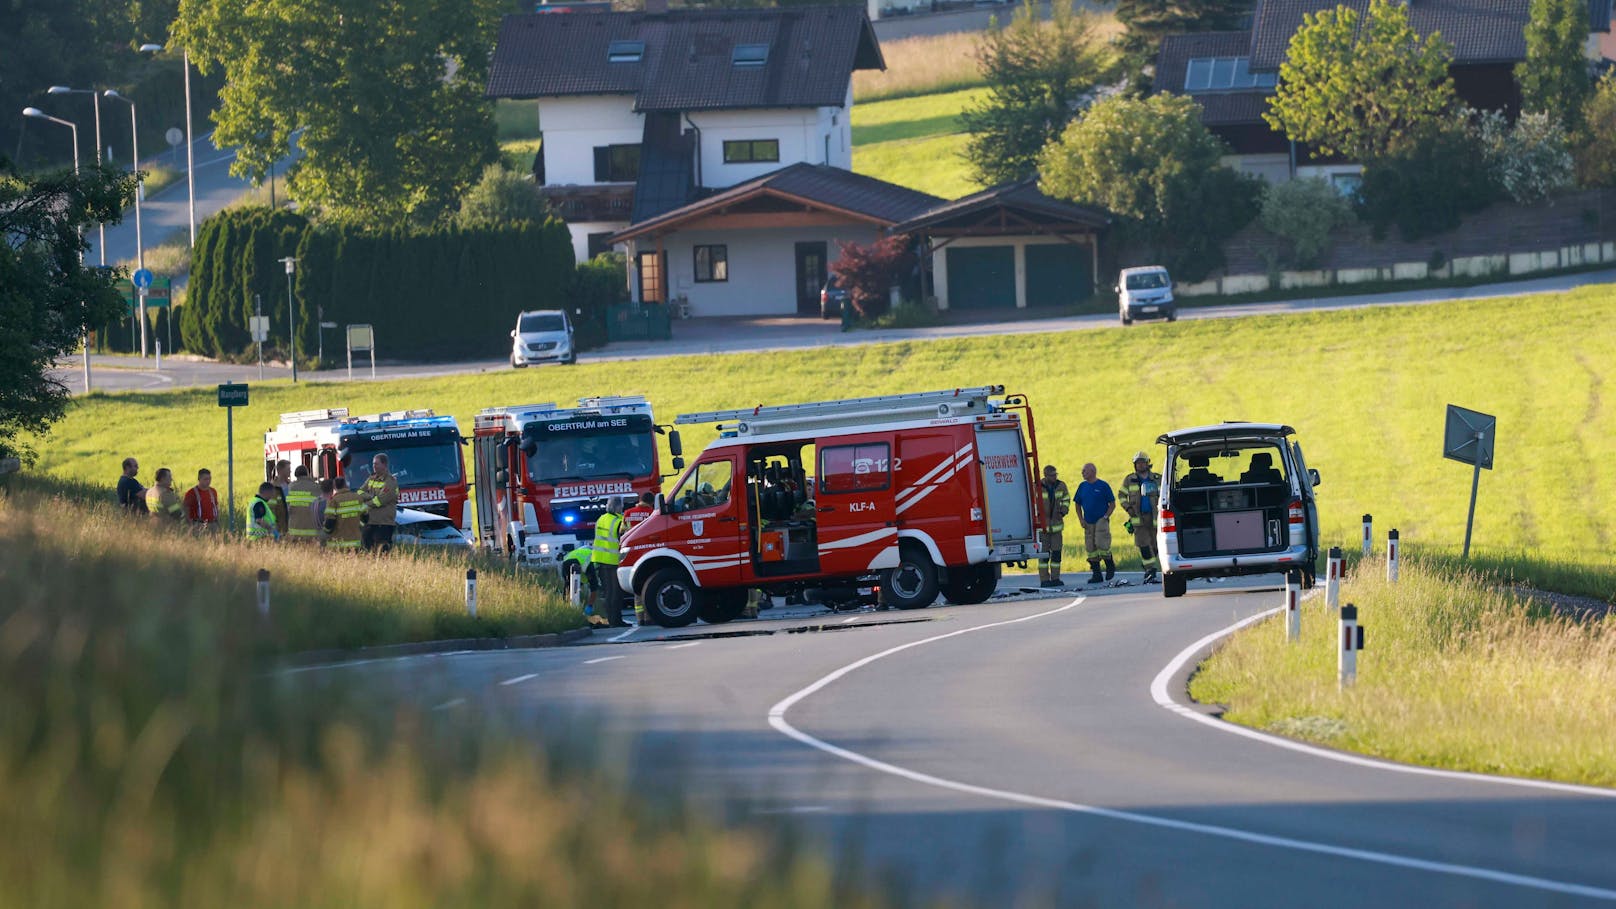 Biker (30) in Salzburg von Auto erfasst – tot